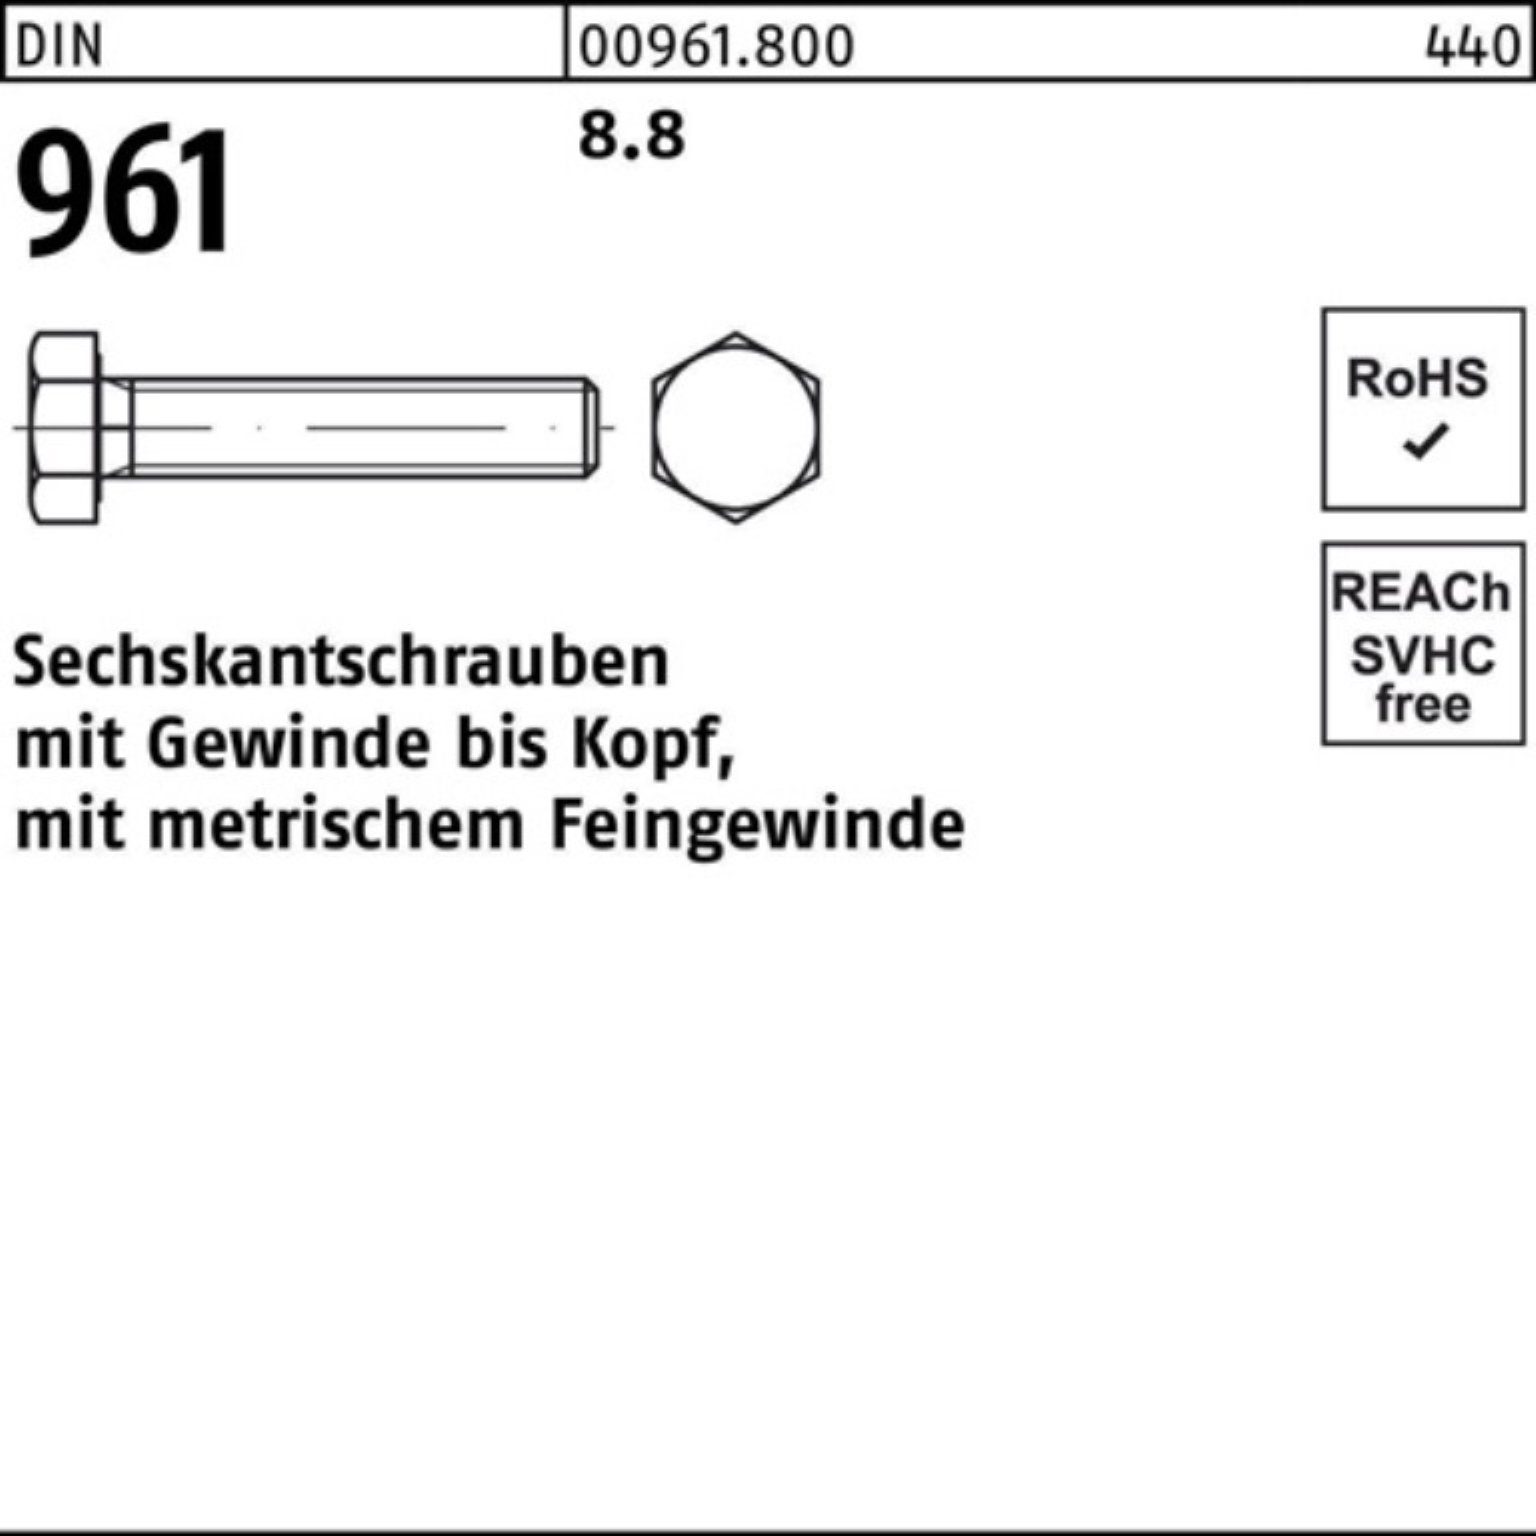 Reyher Sechskantschraube 1 961 Sechskantschraube Stück DIN 8.8 DIN 100er VG 961 M36x3x150 Pack